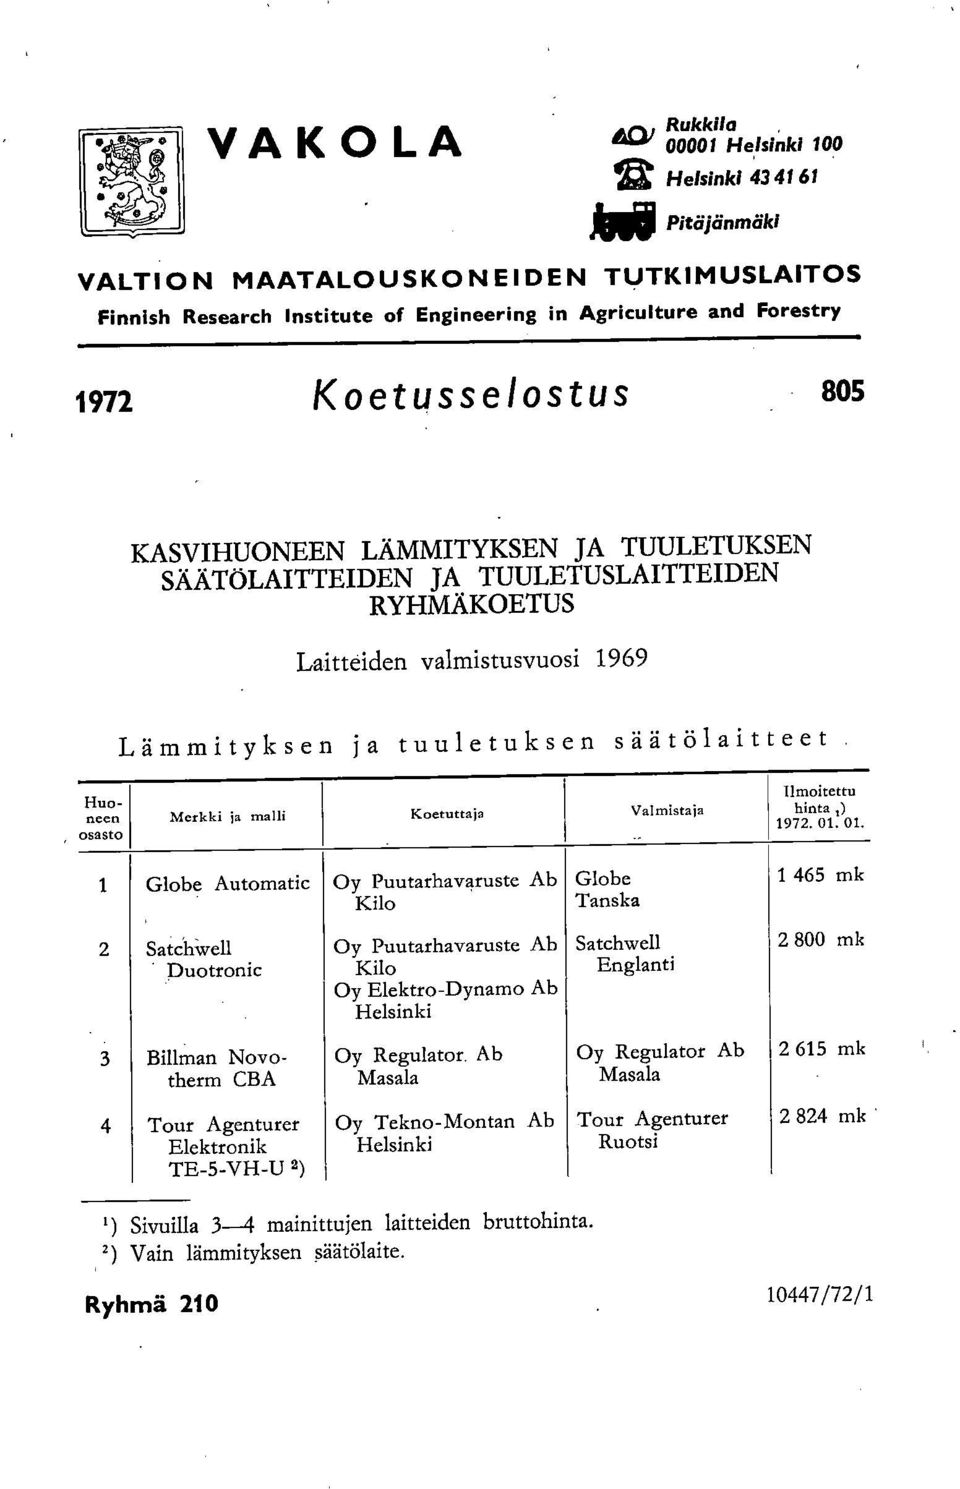 , Huoneen osasto Merkki ja malli Koetuttaja Valmistaja Ilmoitettu hinta,) 1972. 01.